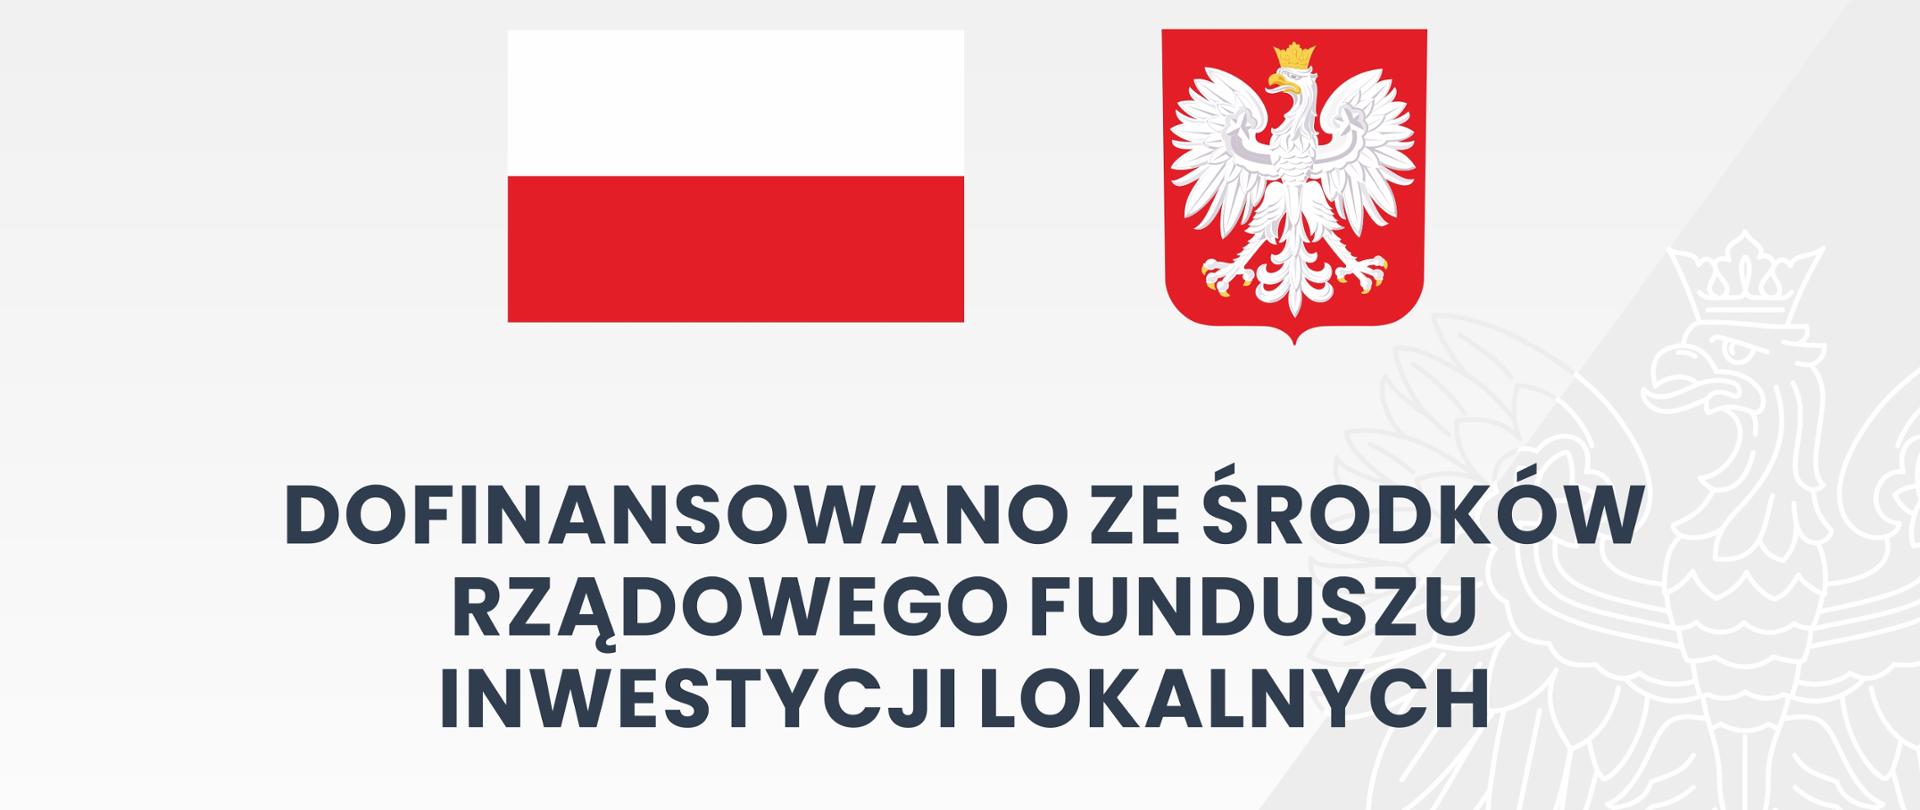 Tablica na szarym tle w centralnej części zawiera flagę i godło Polski. W tle z prawej strony znak wodny z orłem w koronie